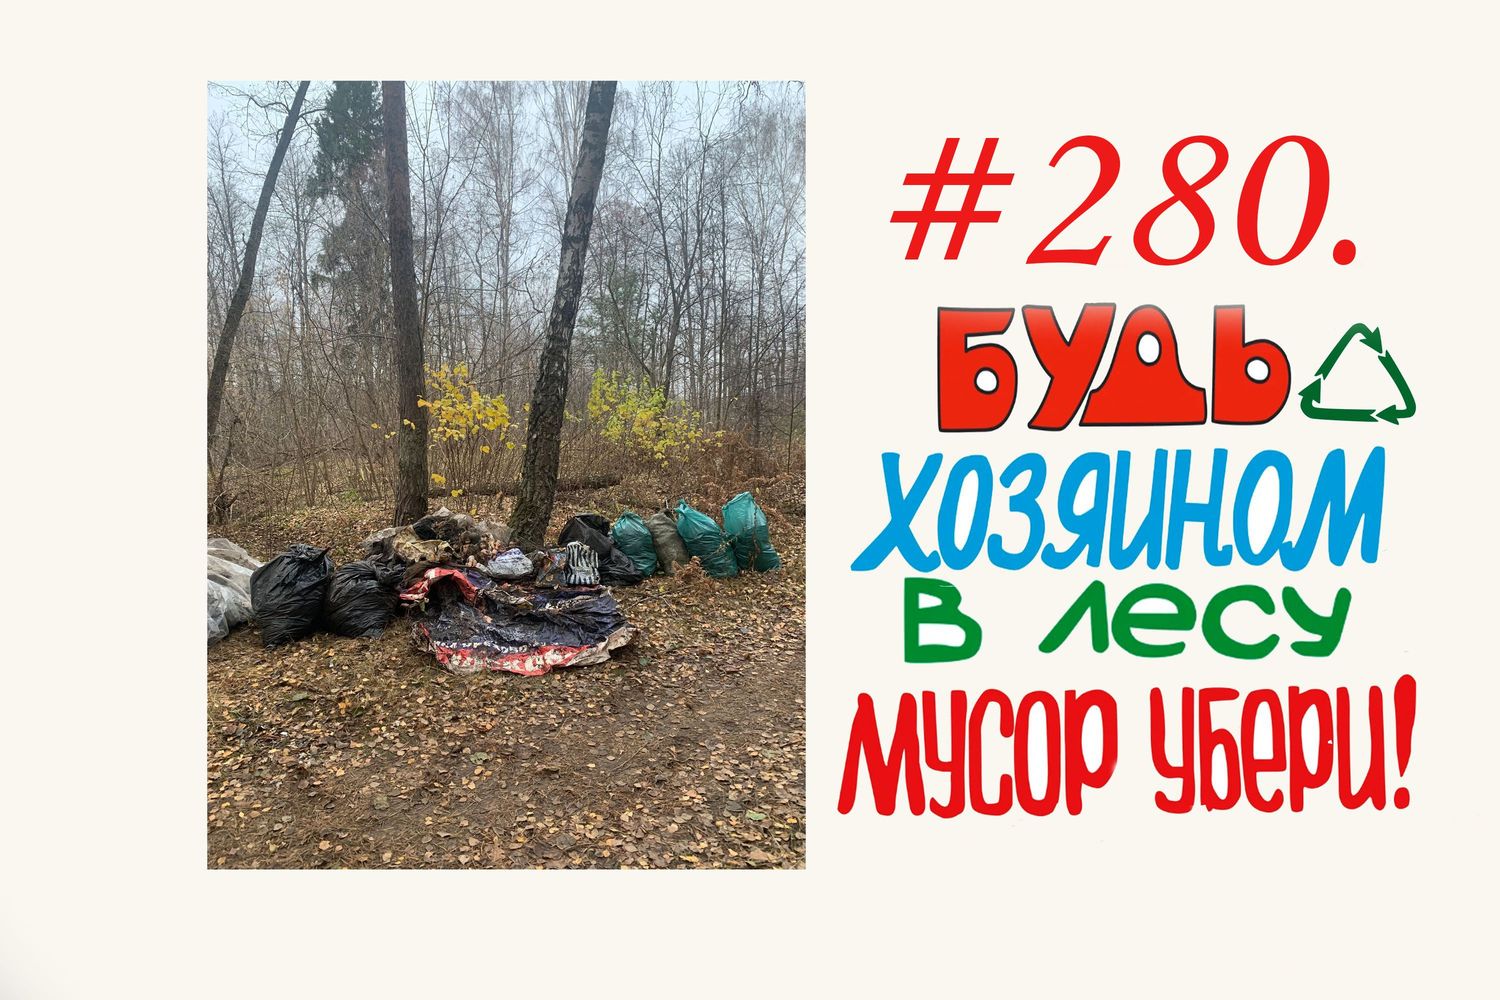 subbotnik in Russia 139 мешков  #280